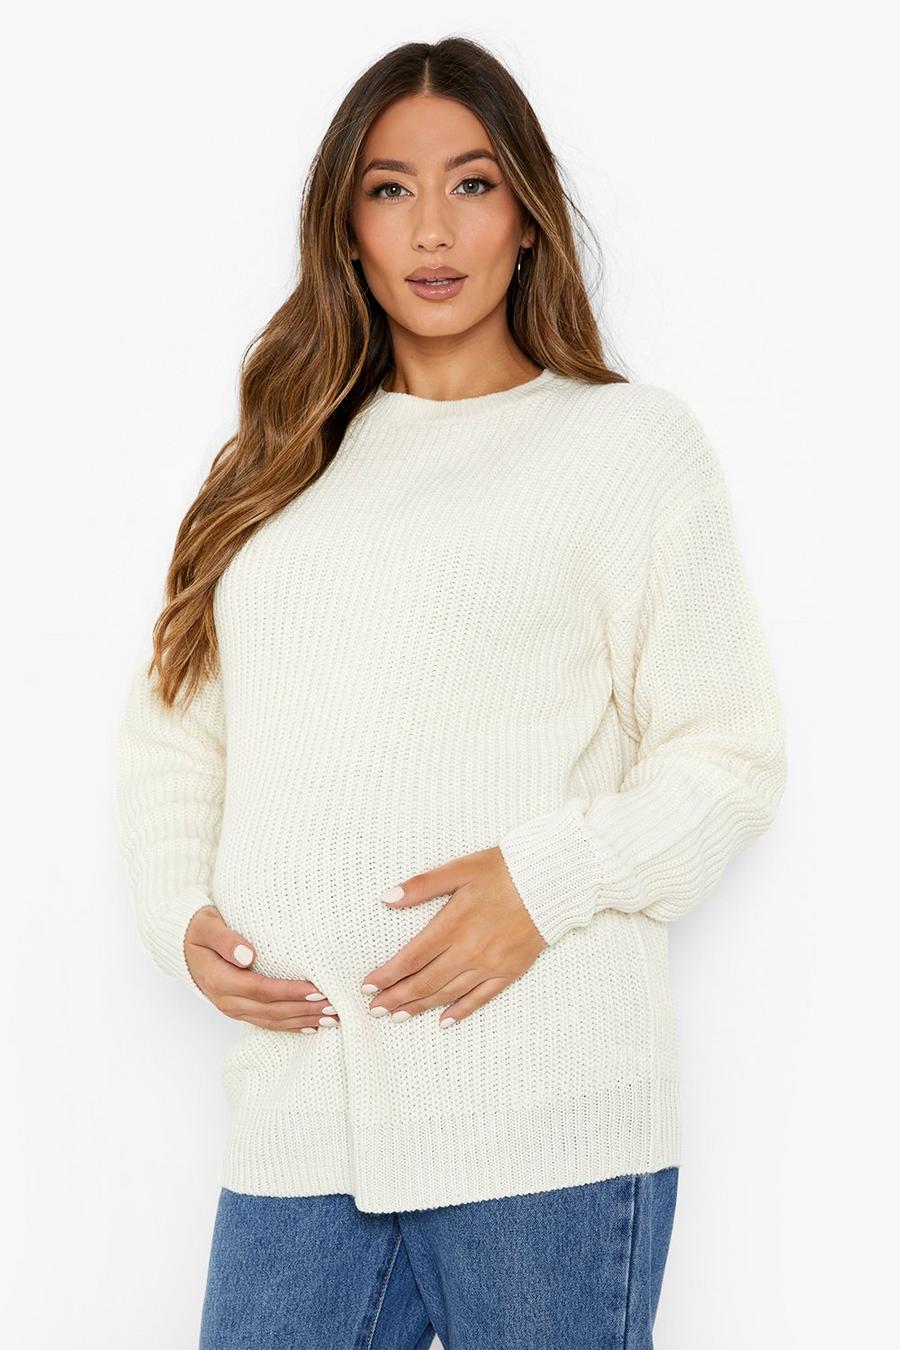 שמנת bianco סוודר מבד ממוחזר עם צווארון עגול, להיריון